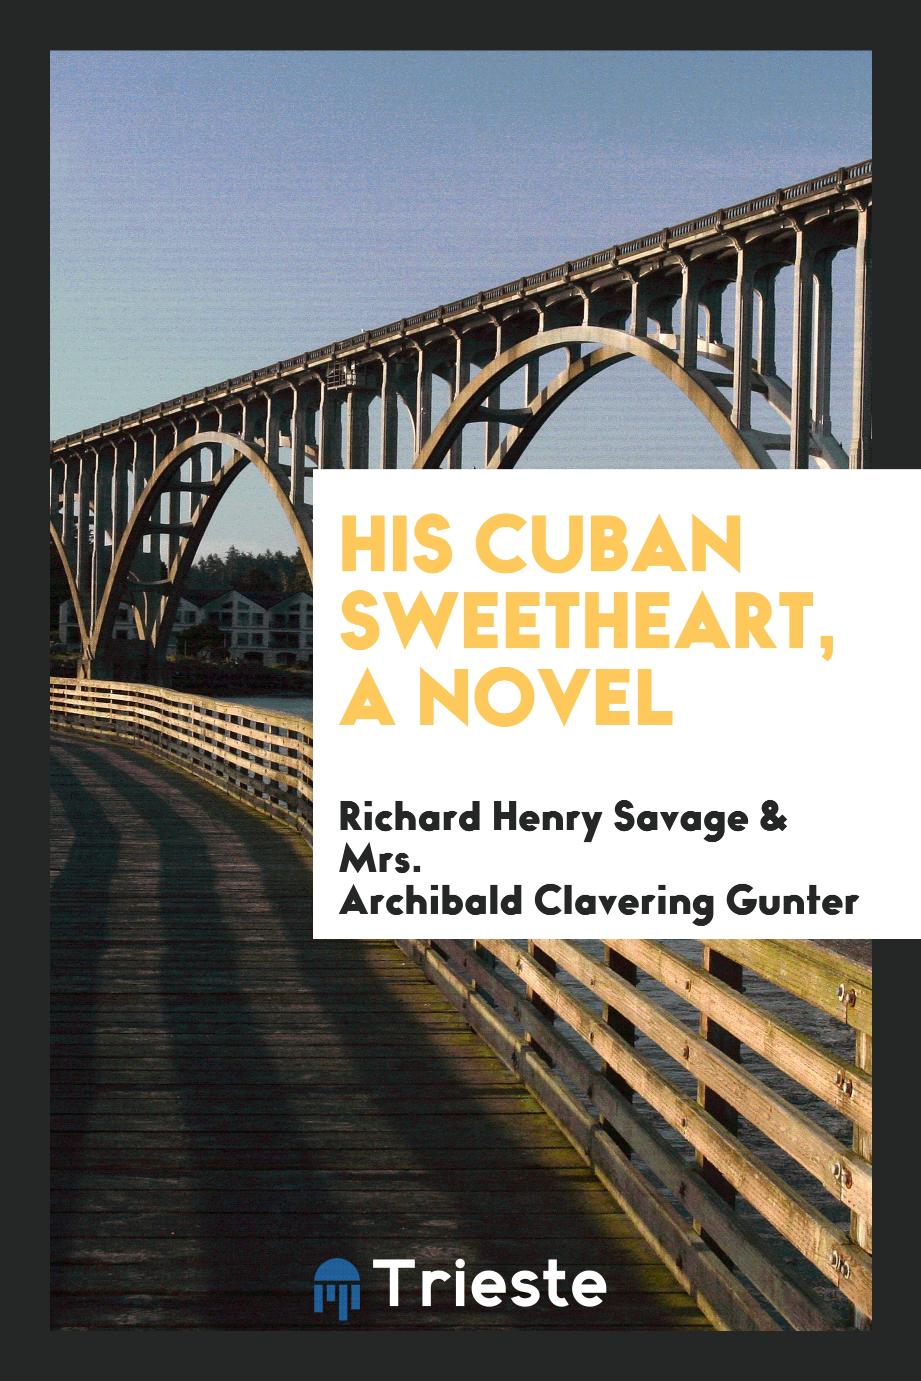 His Cuban sweetheart, a novel